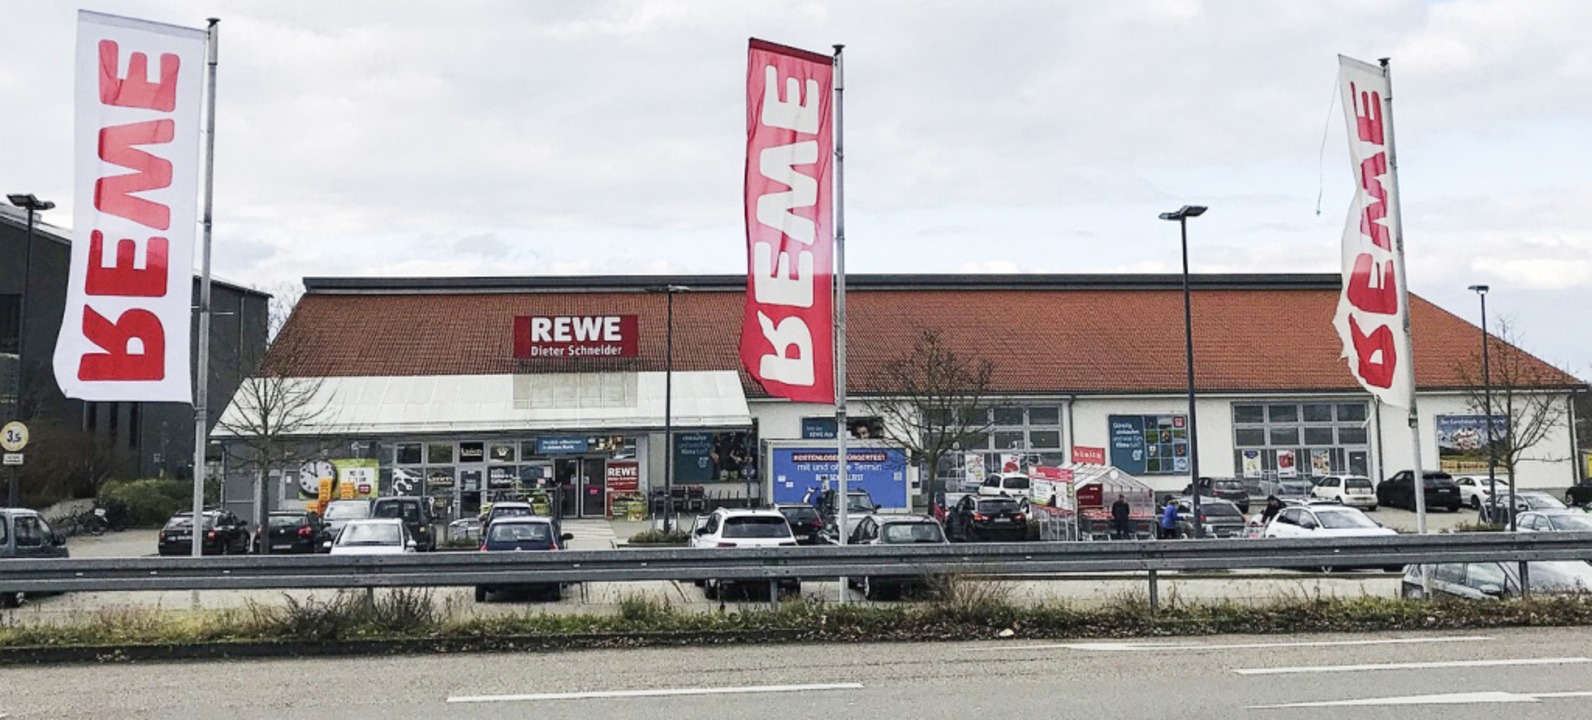 Der Rewe-Markt in Schallstadt soll modernisiert werden.  | Foto: Aarne Partanen